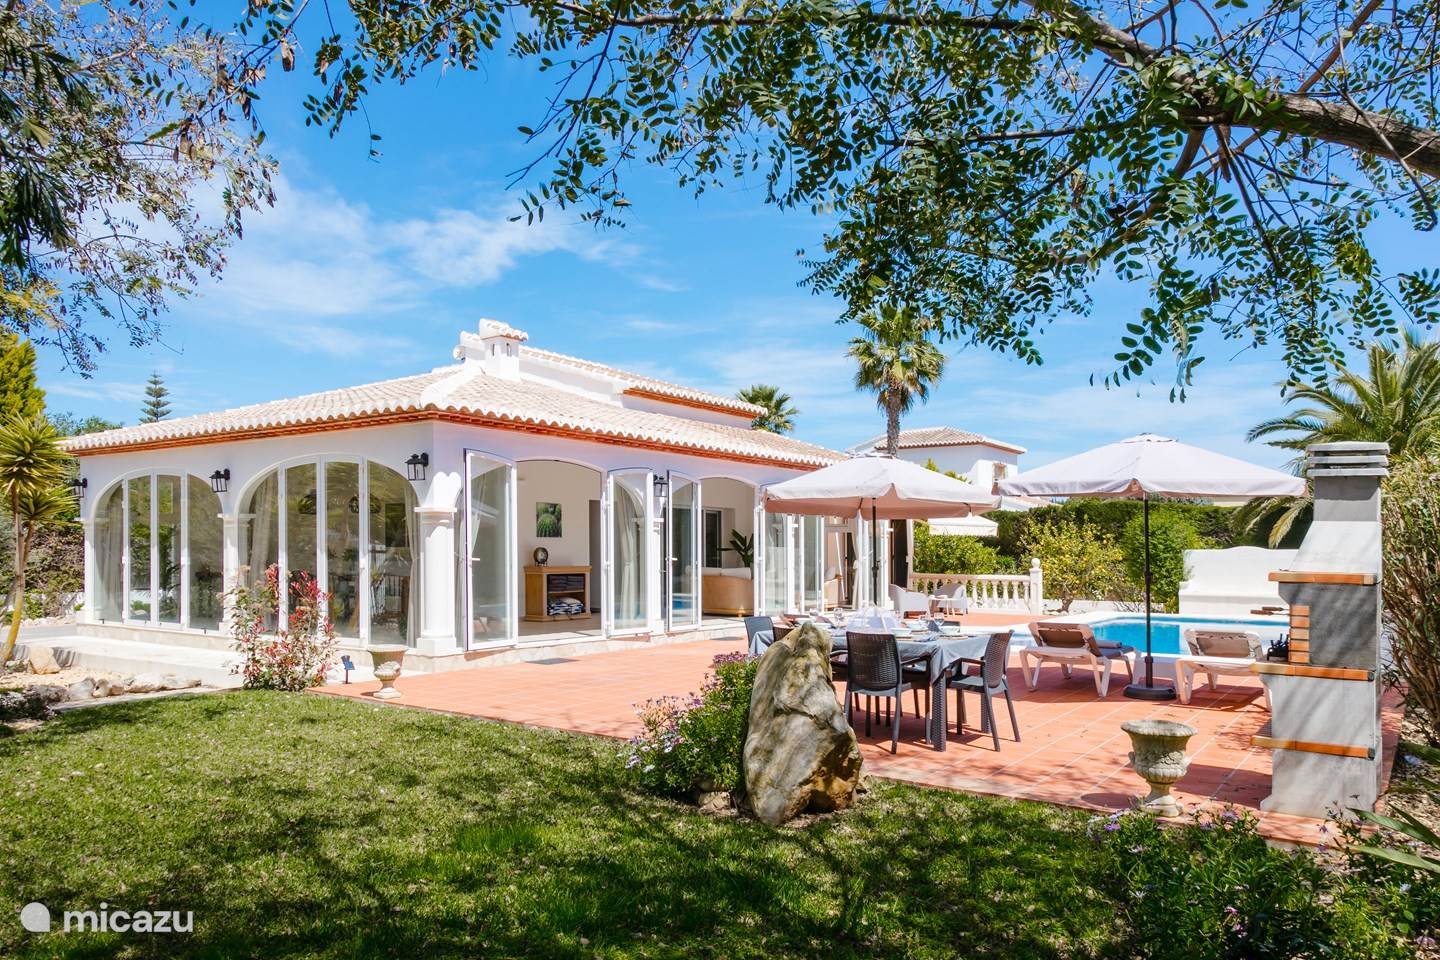 ¿Alquilar Villa Deseo en Jávea, Costa Blanca? | Micazu